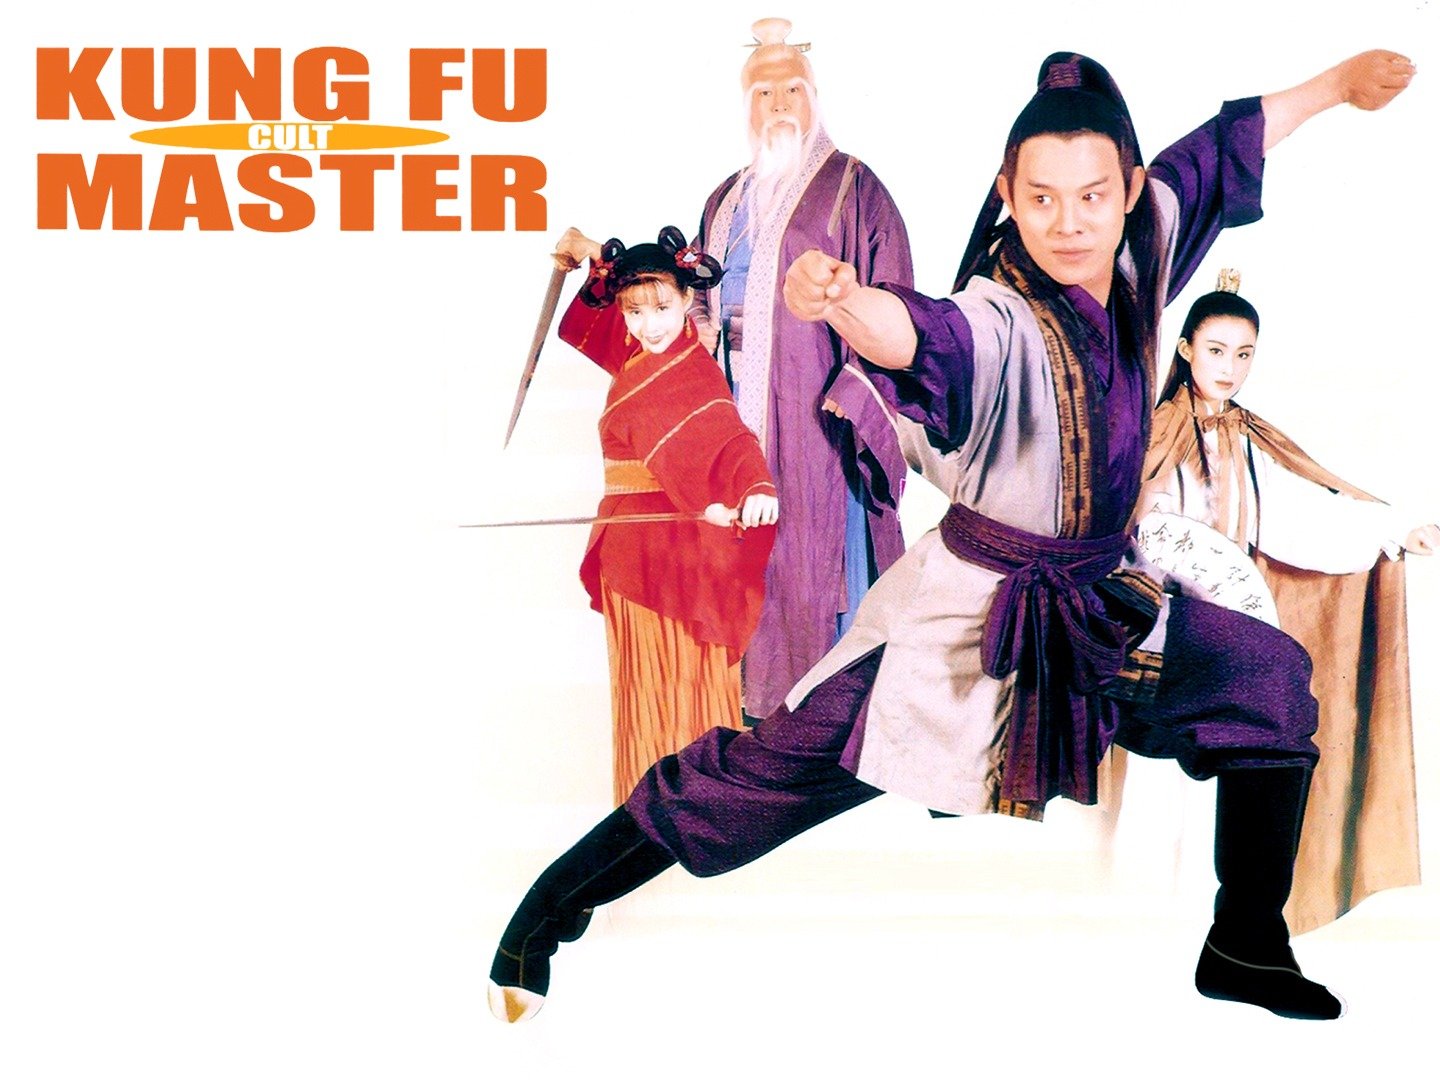 Kung fu cult master